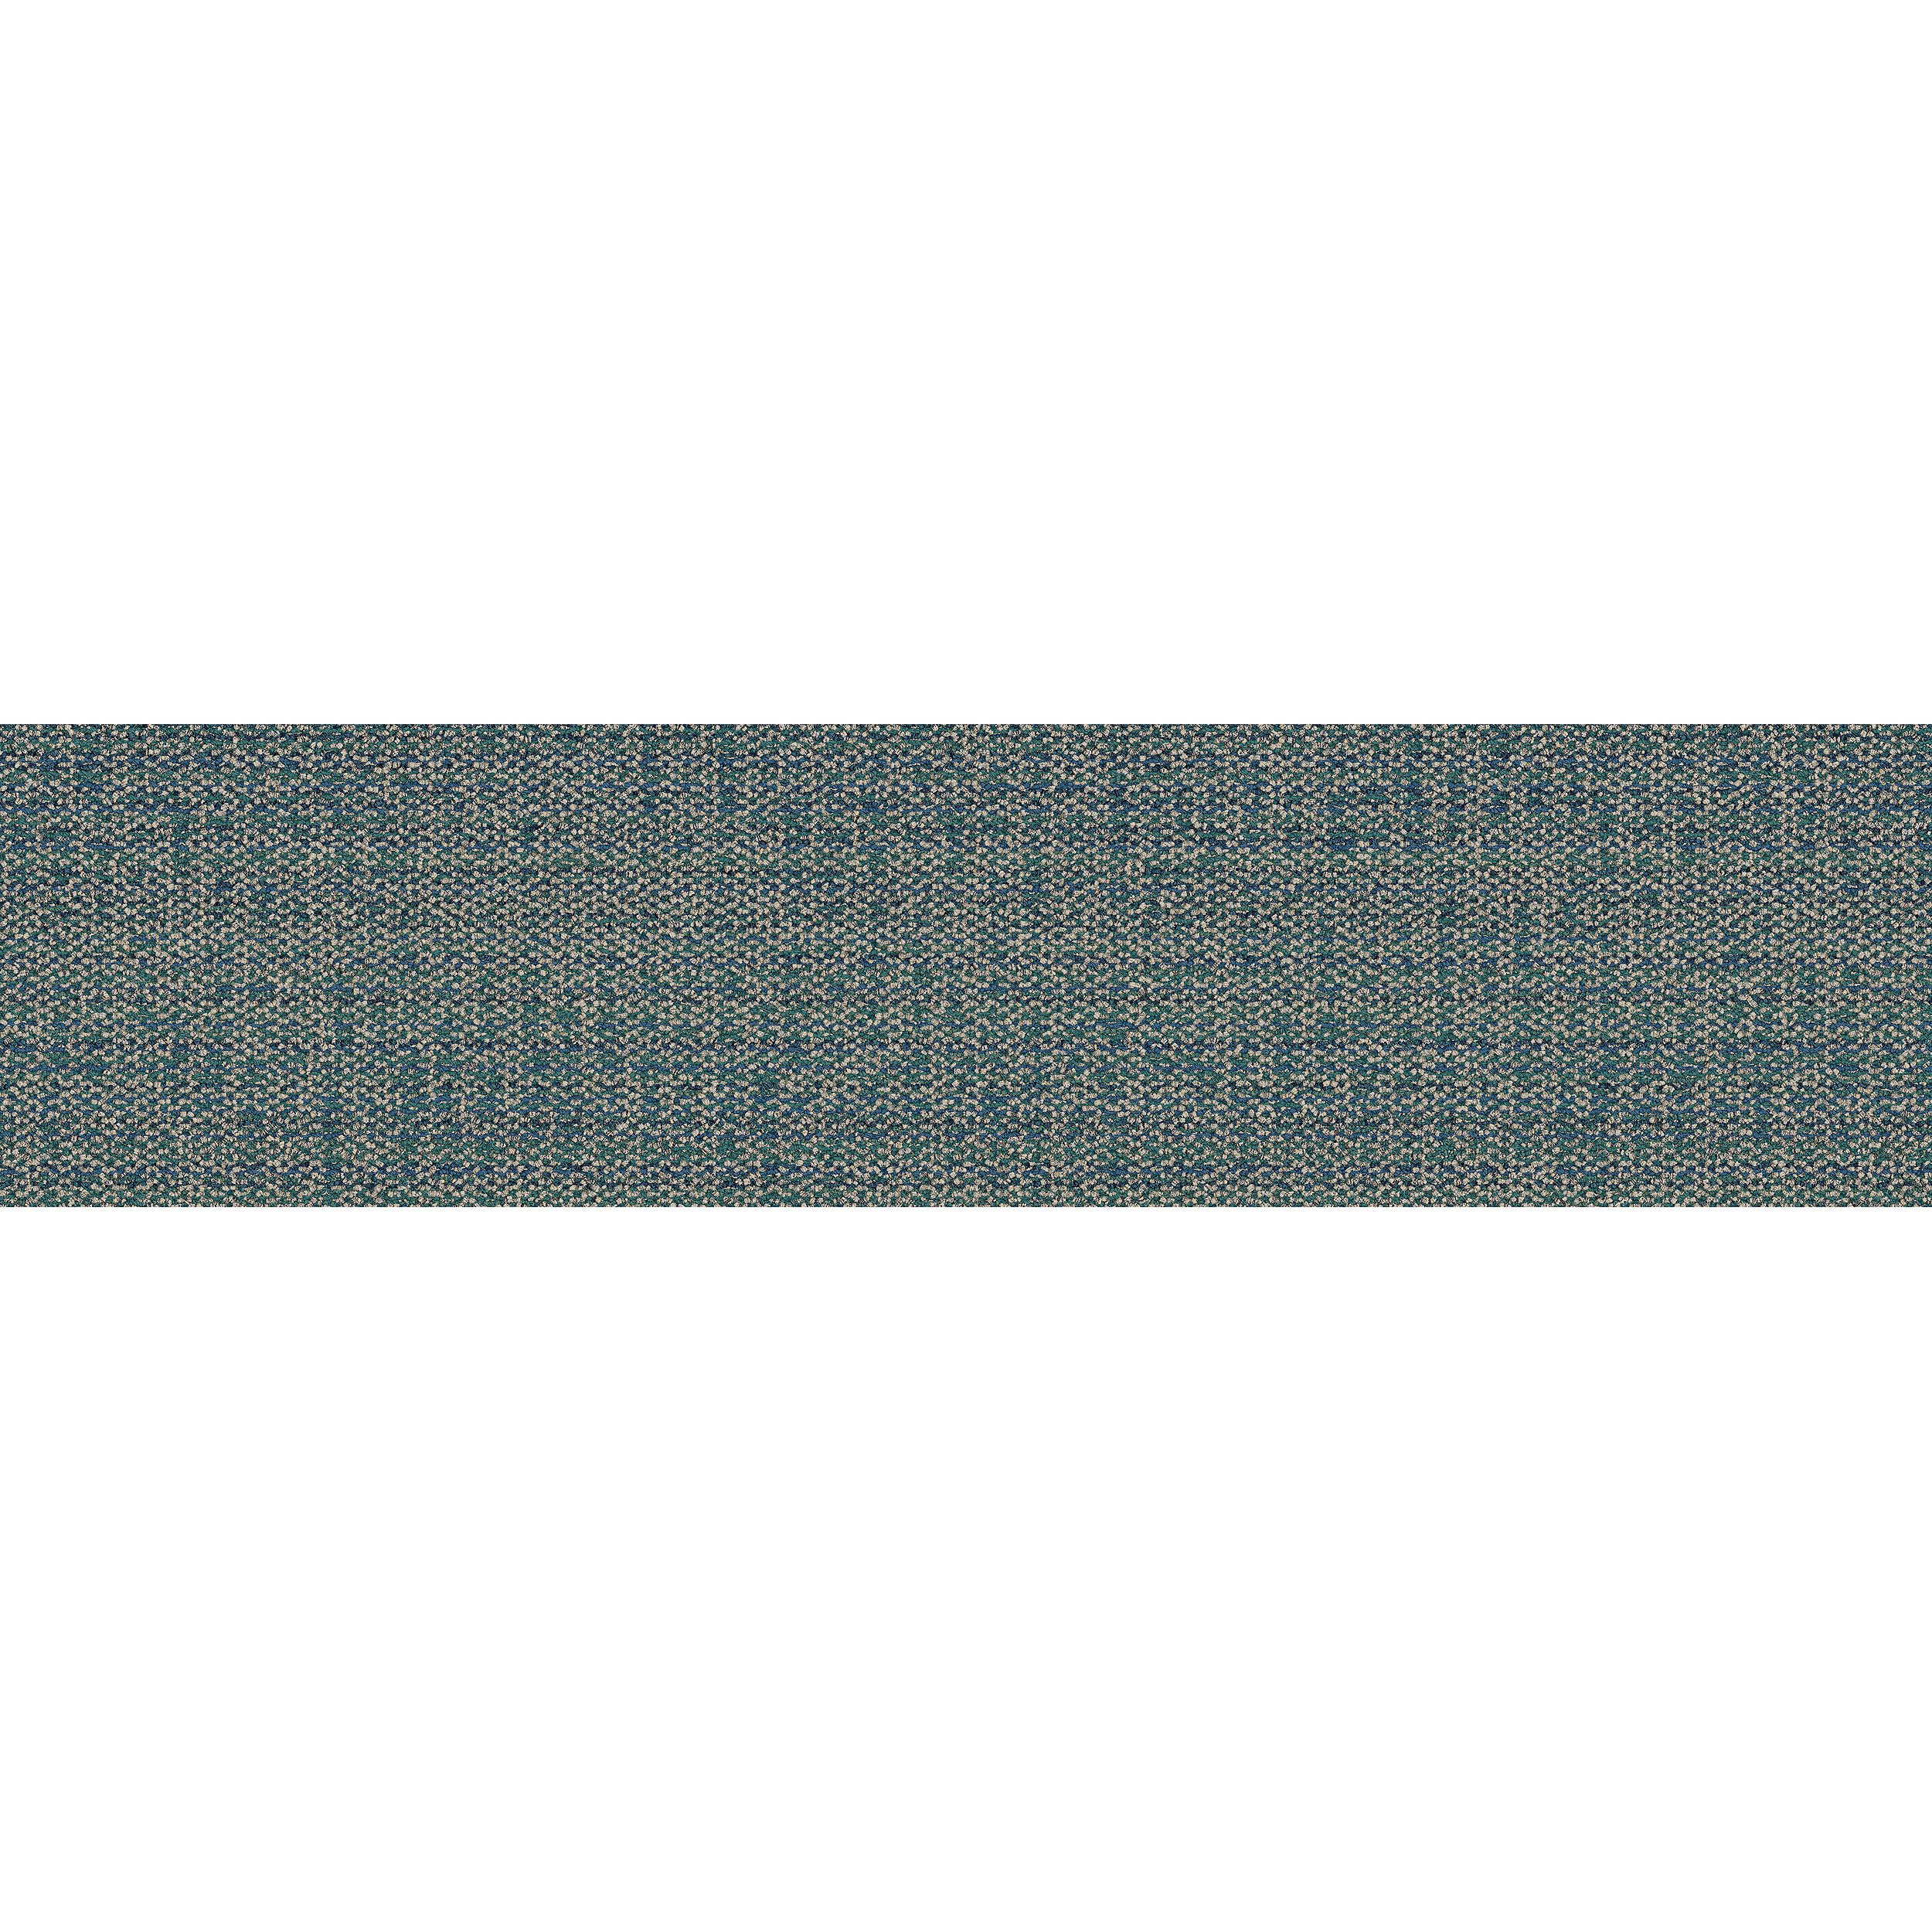 Diddley Dot Carpet Tile in Tourmaline image number 13